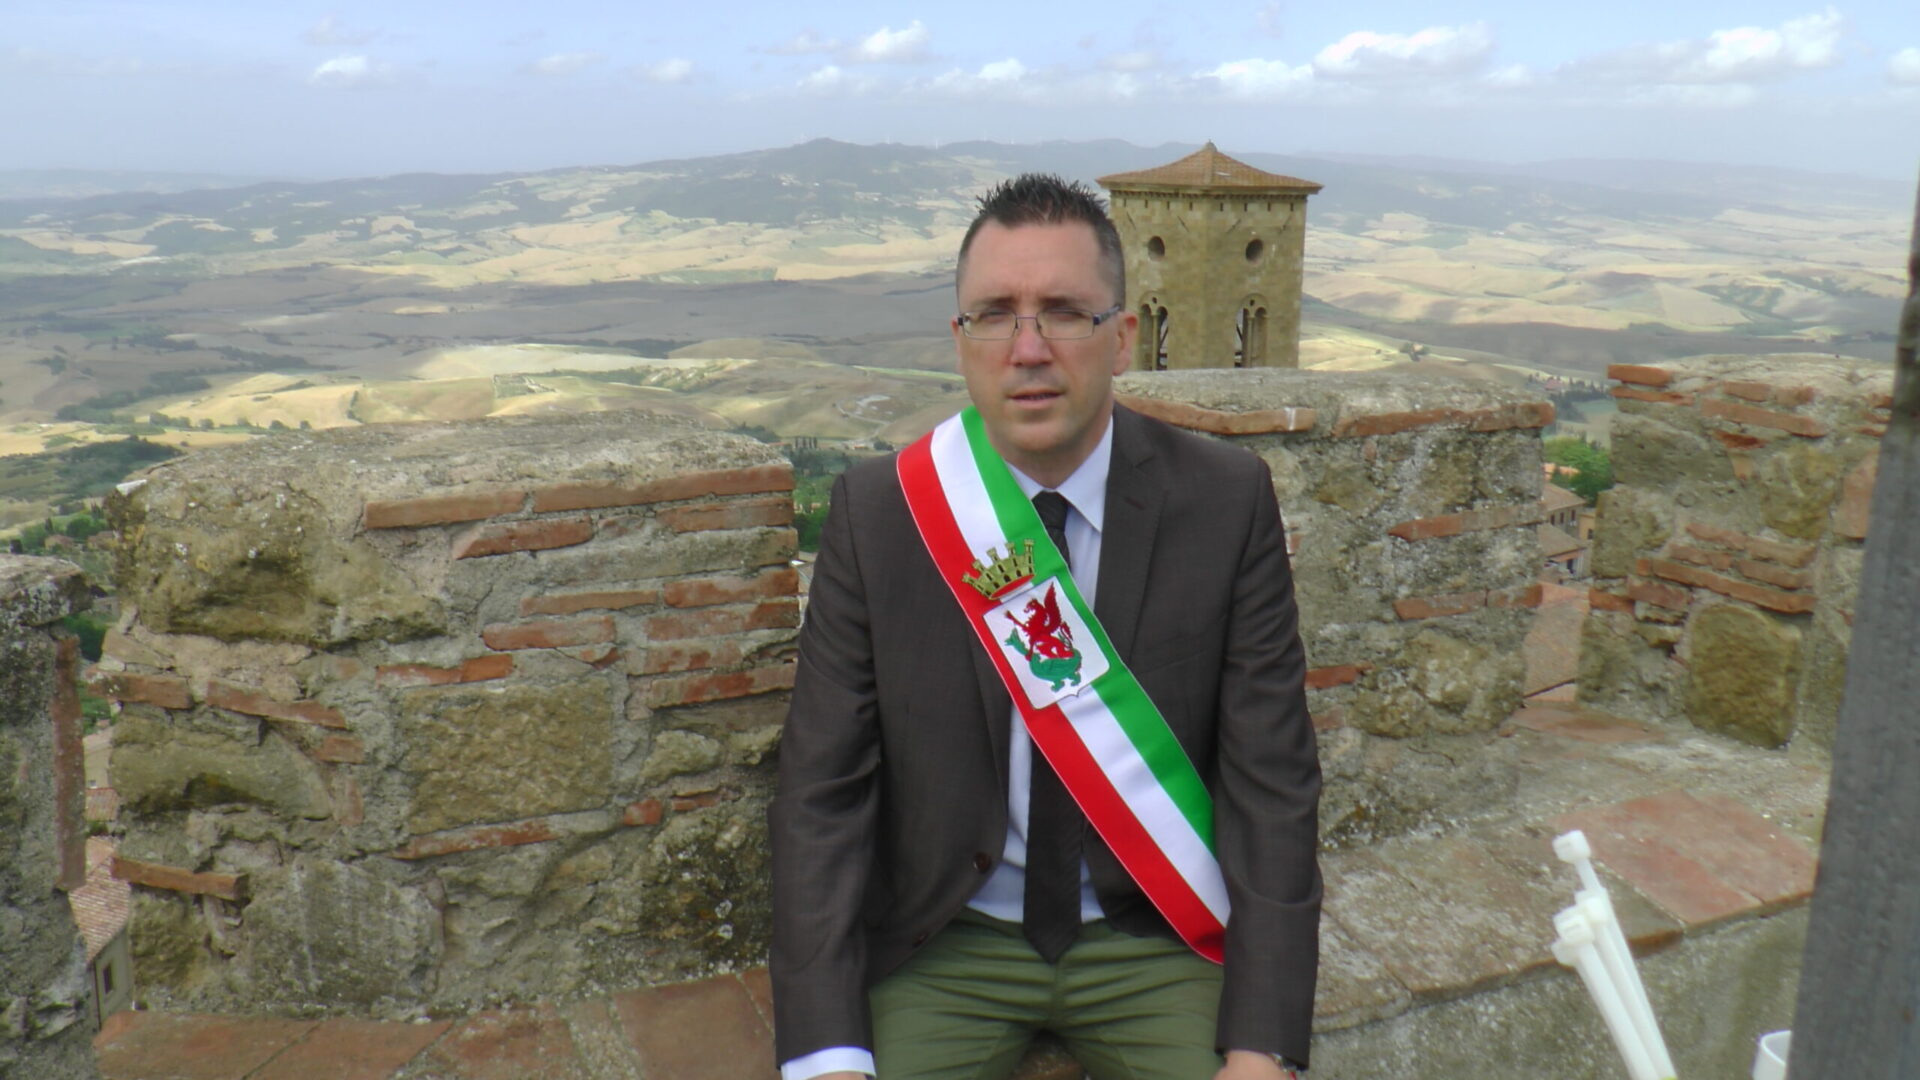 No ai tagli all’ospedale, il sindaco di Volterra sale sulla torre per protesta ad oltranza